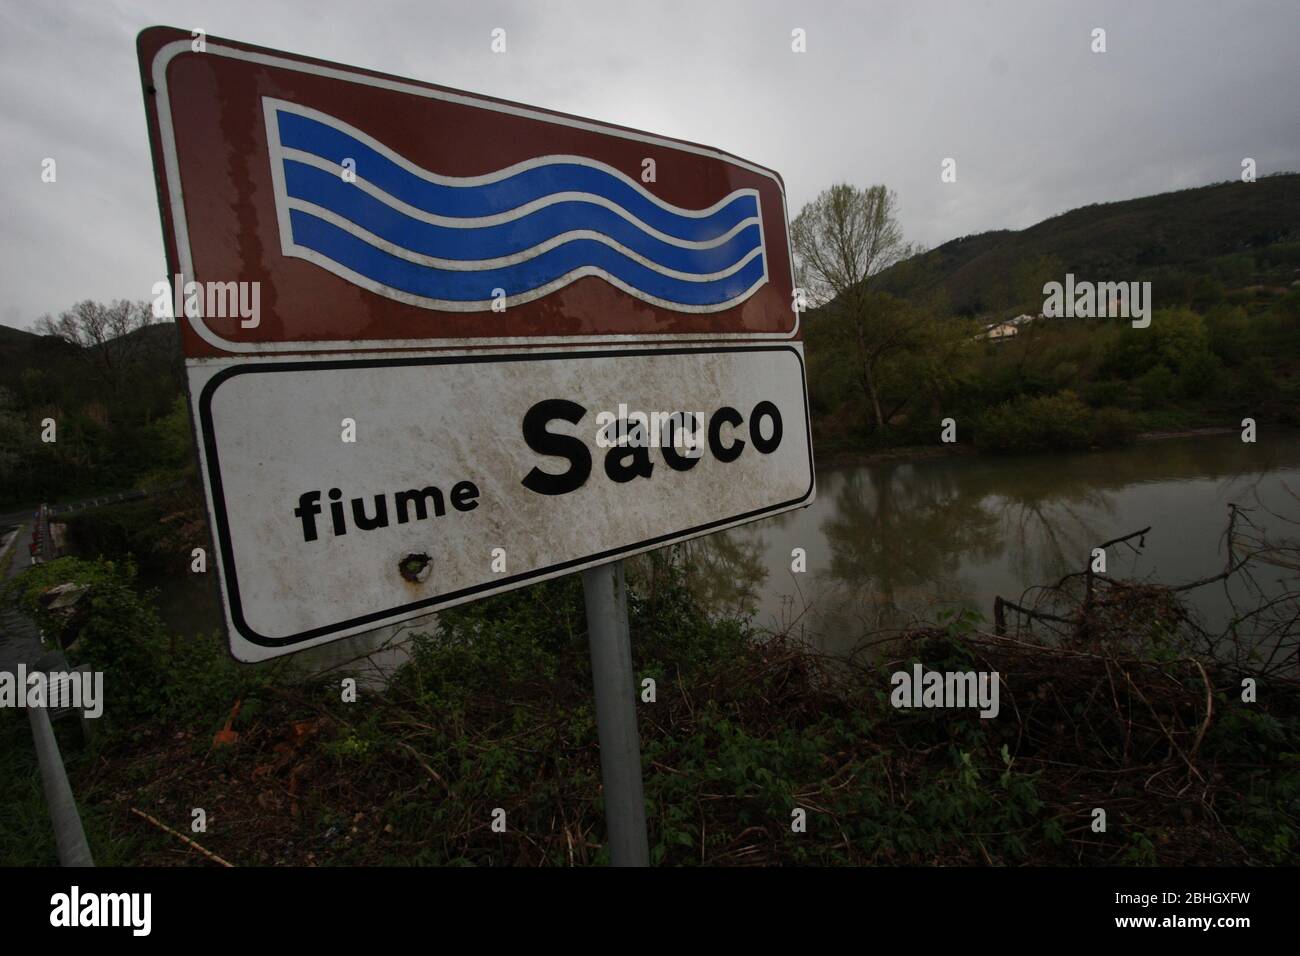 Ceprano, Italie - 5 avril 2011 : une partie de la rivière Sacco polluée dans la province de Frosinone Banque D'Images